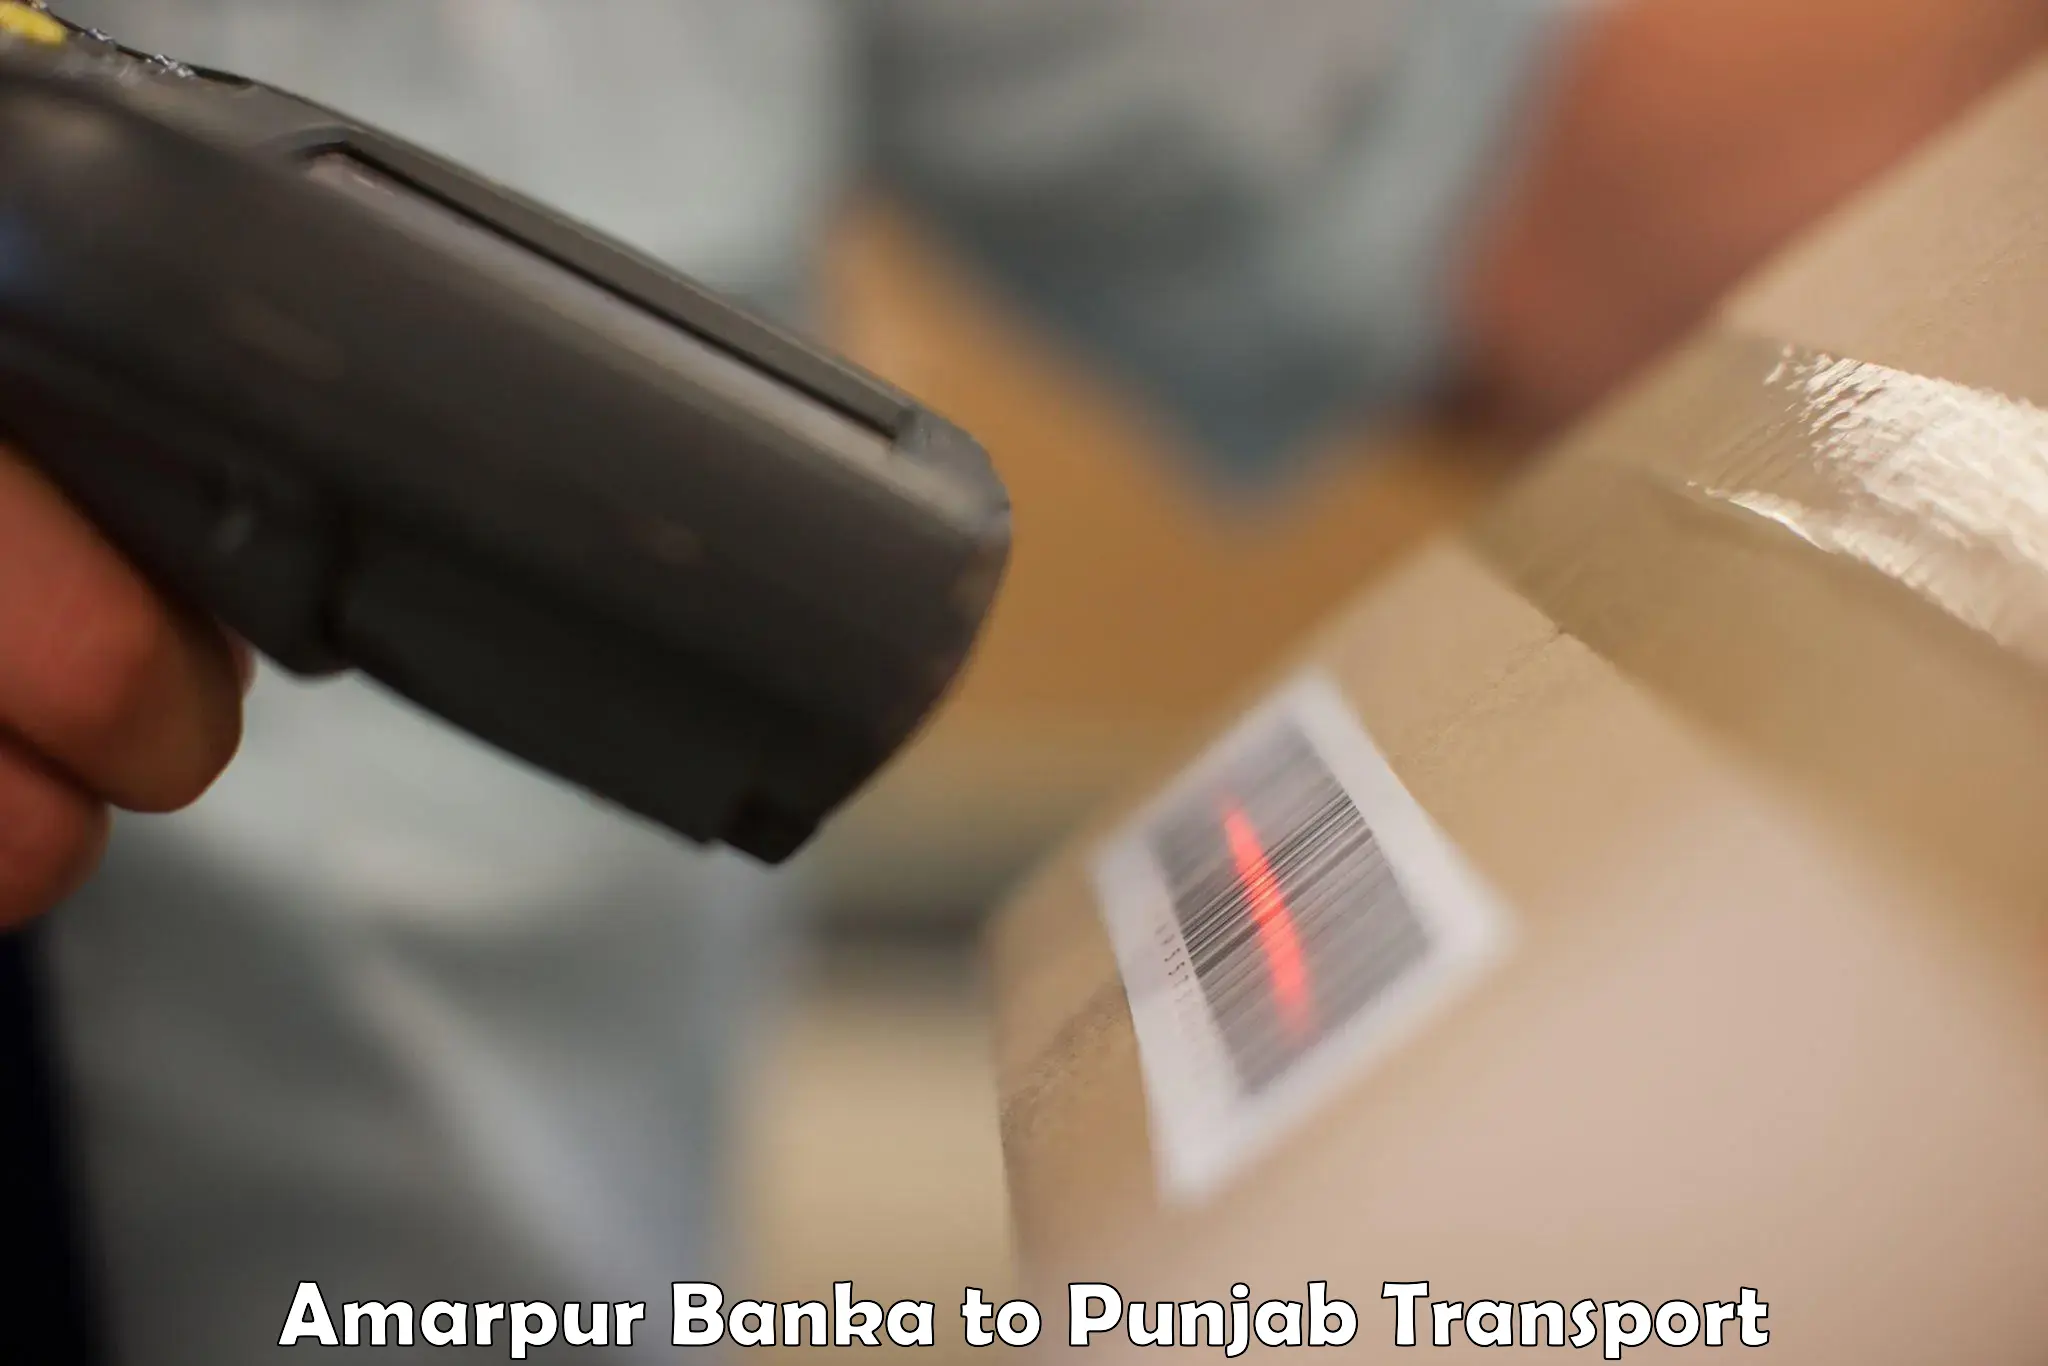 Commercial transport service Amarpur Banka to Sangrur